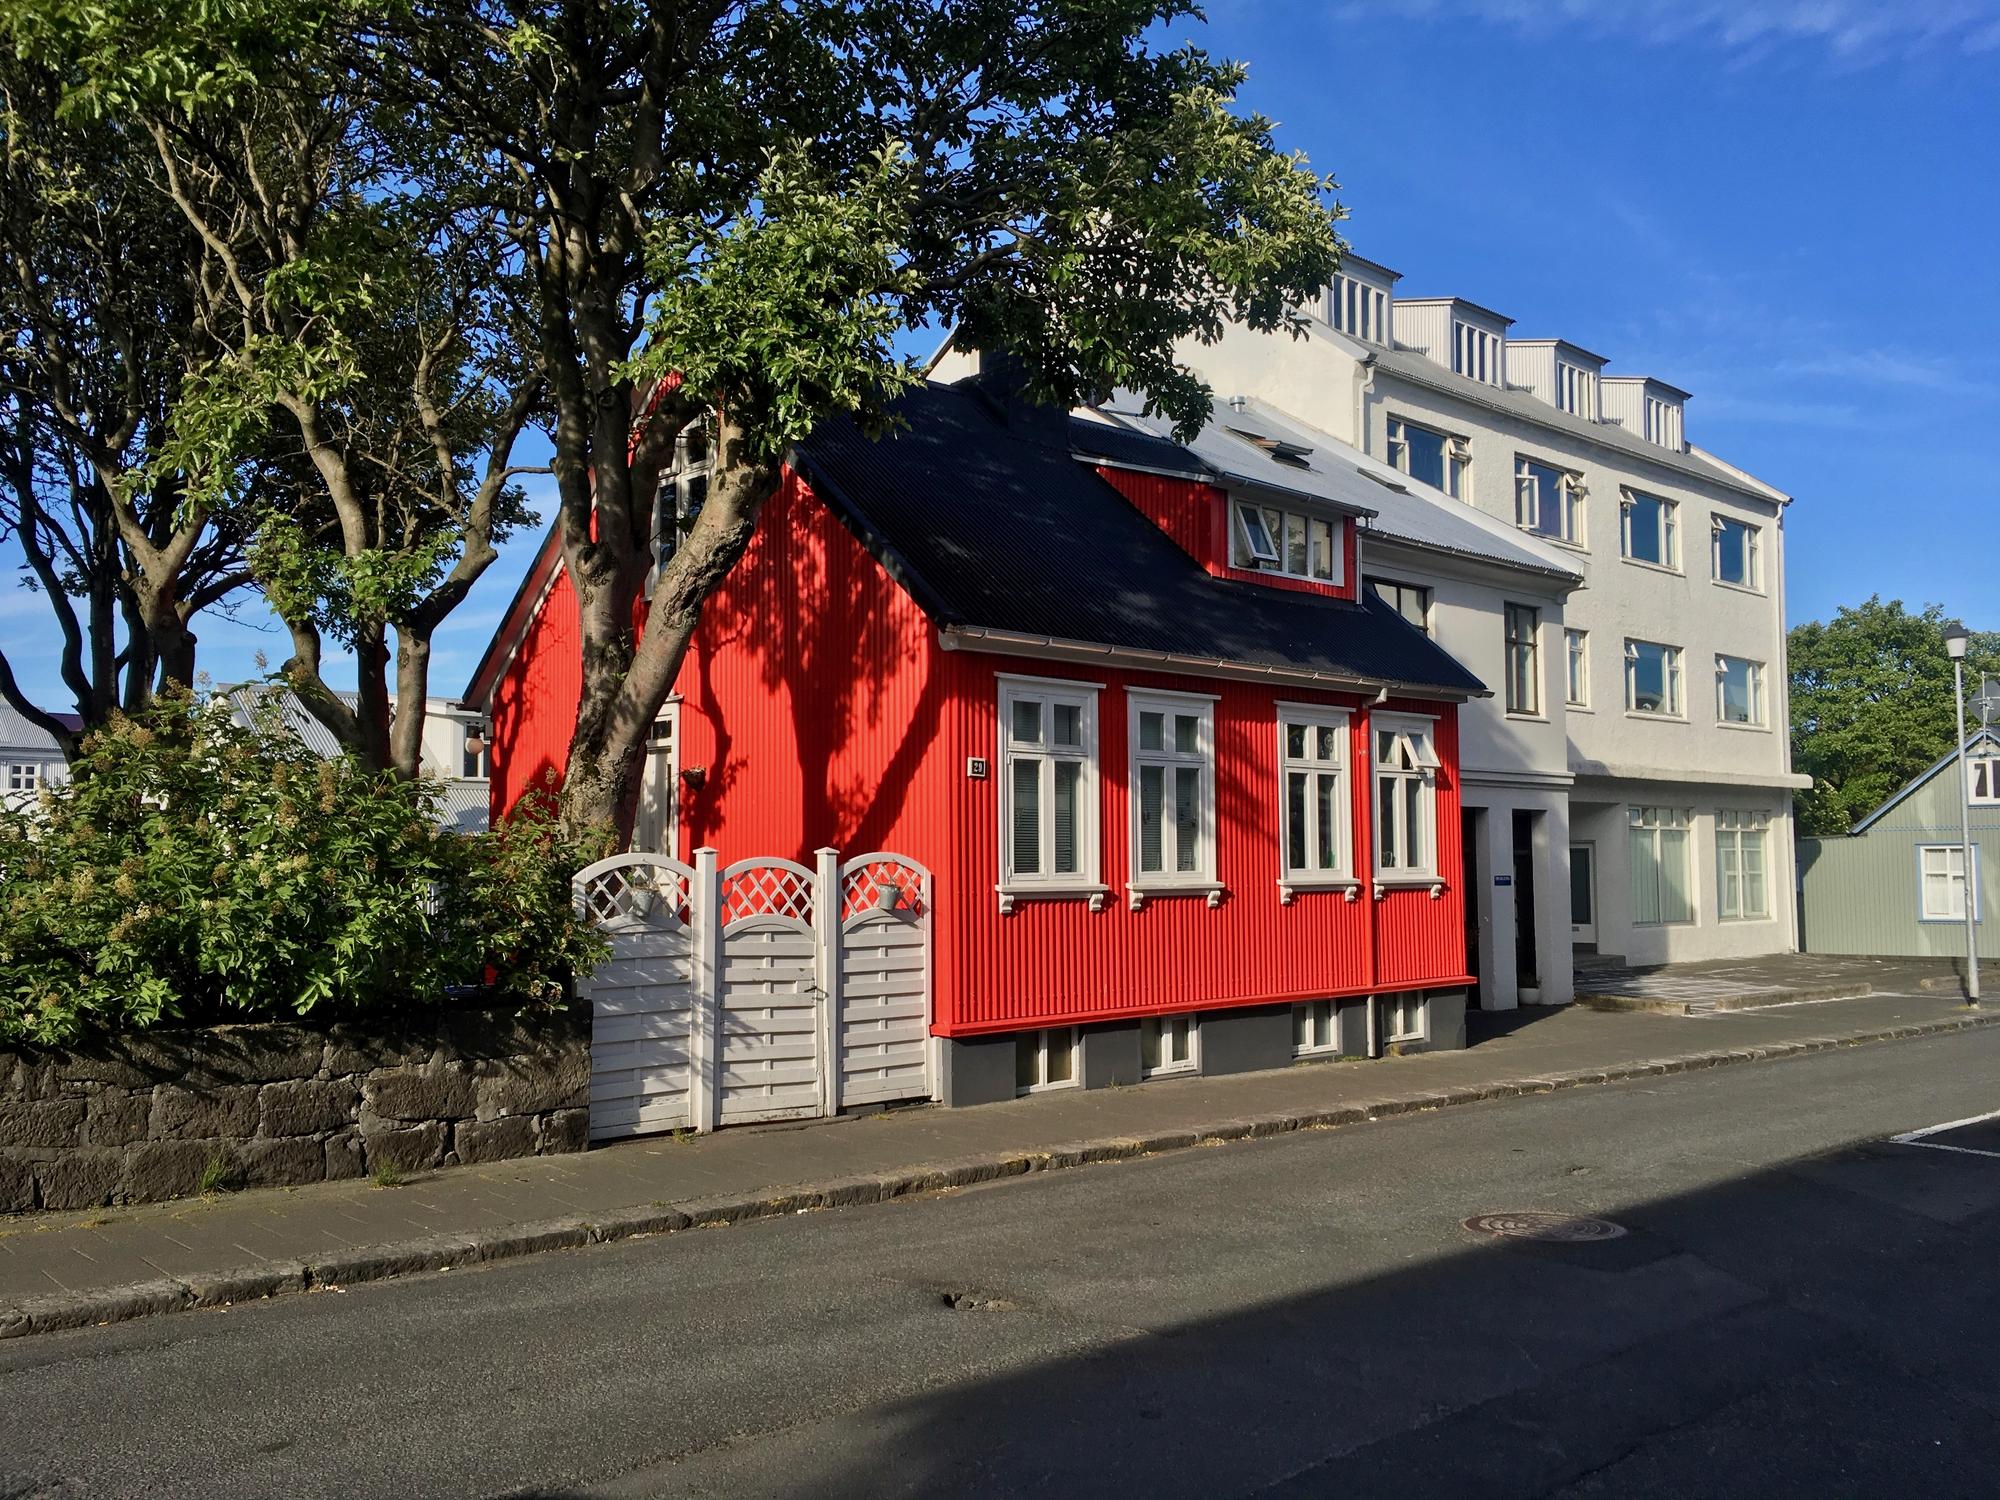 🇮🇸 Reykjavik, Iceland, June 2019.